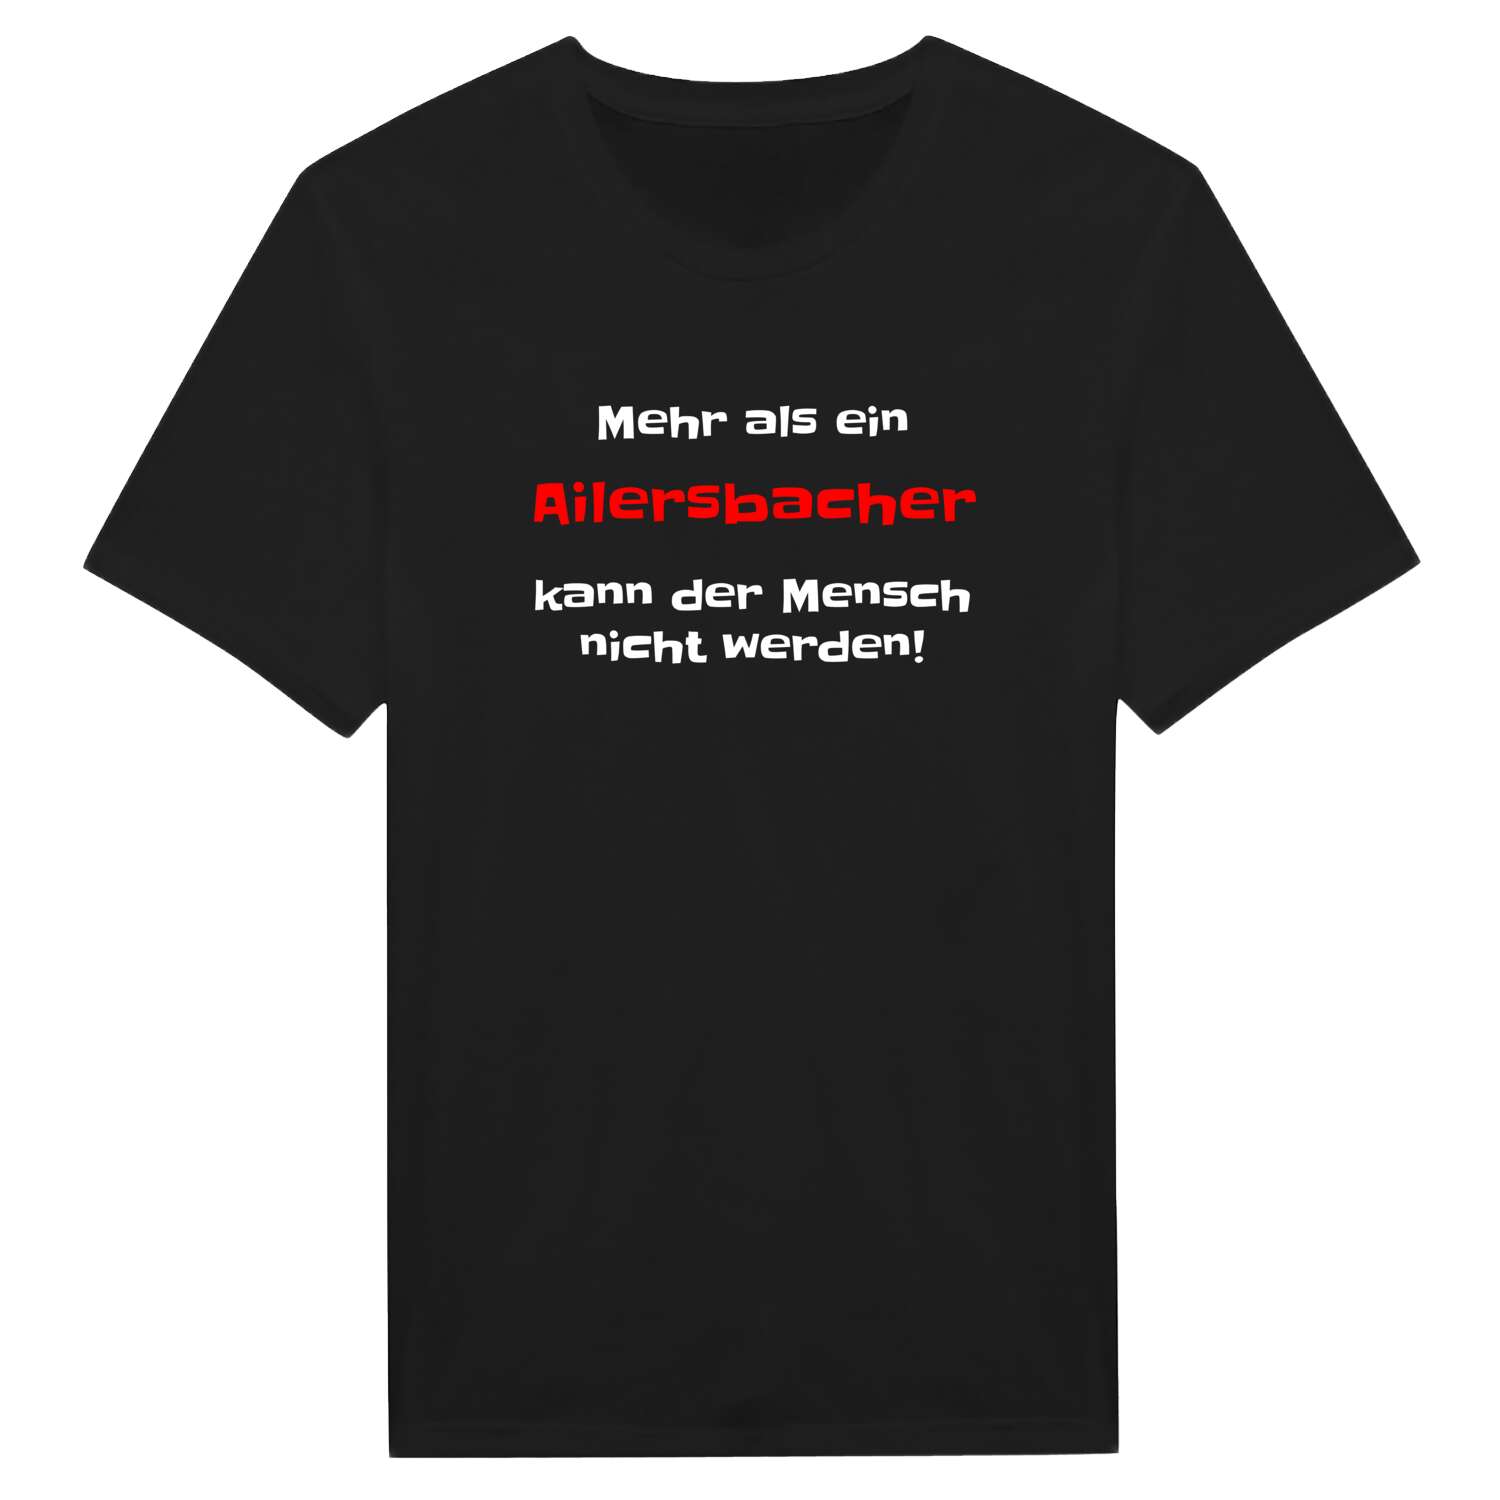 Ailersbach T-Shirt »Mehr als ein«